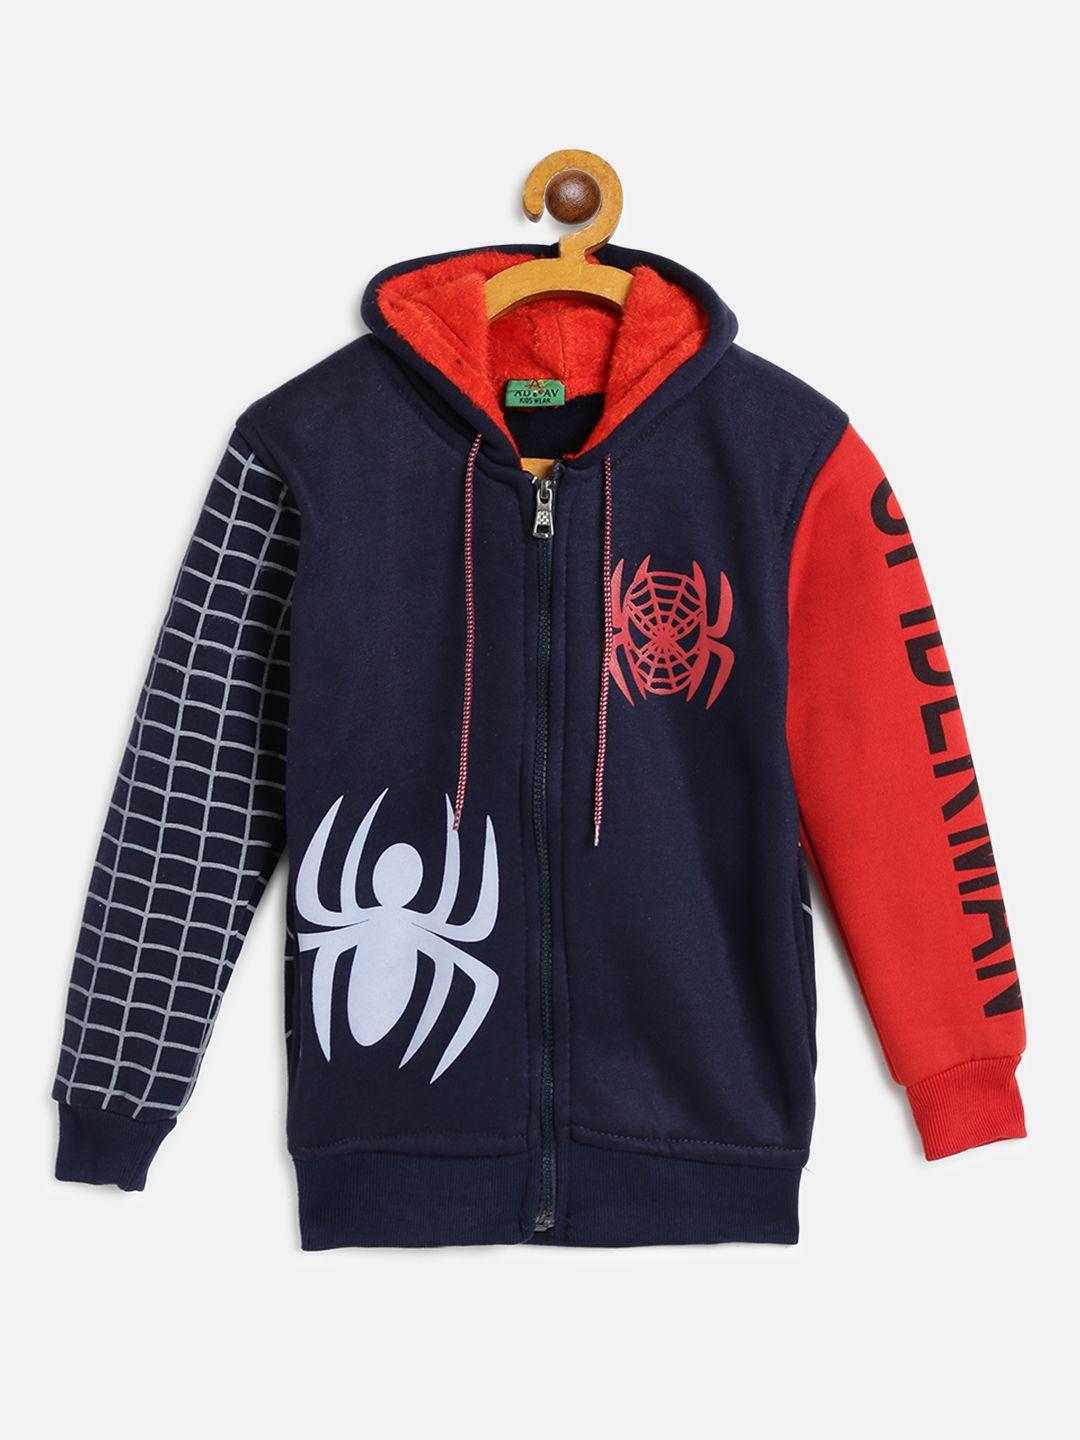 ad & av boys navy blue & red spiderman print hooded sweatshirt